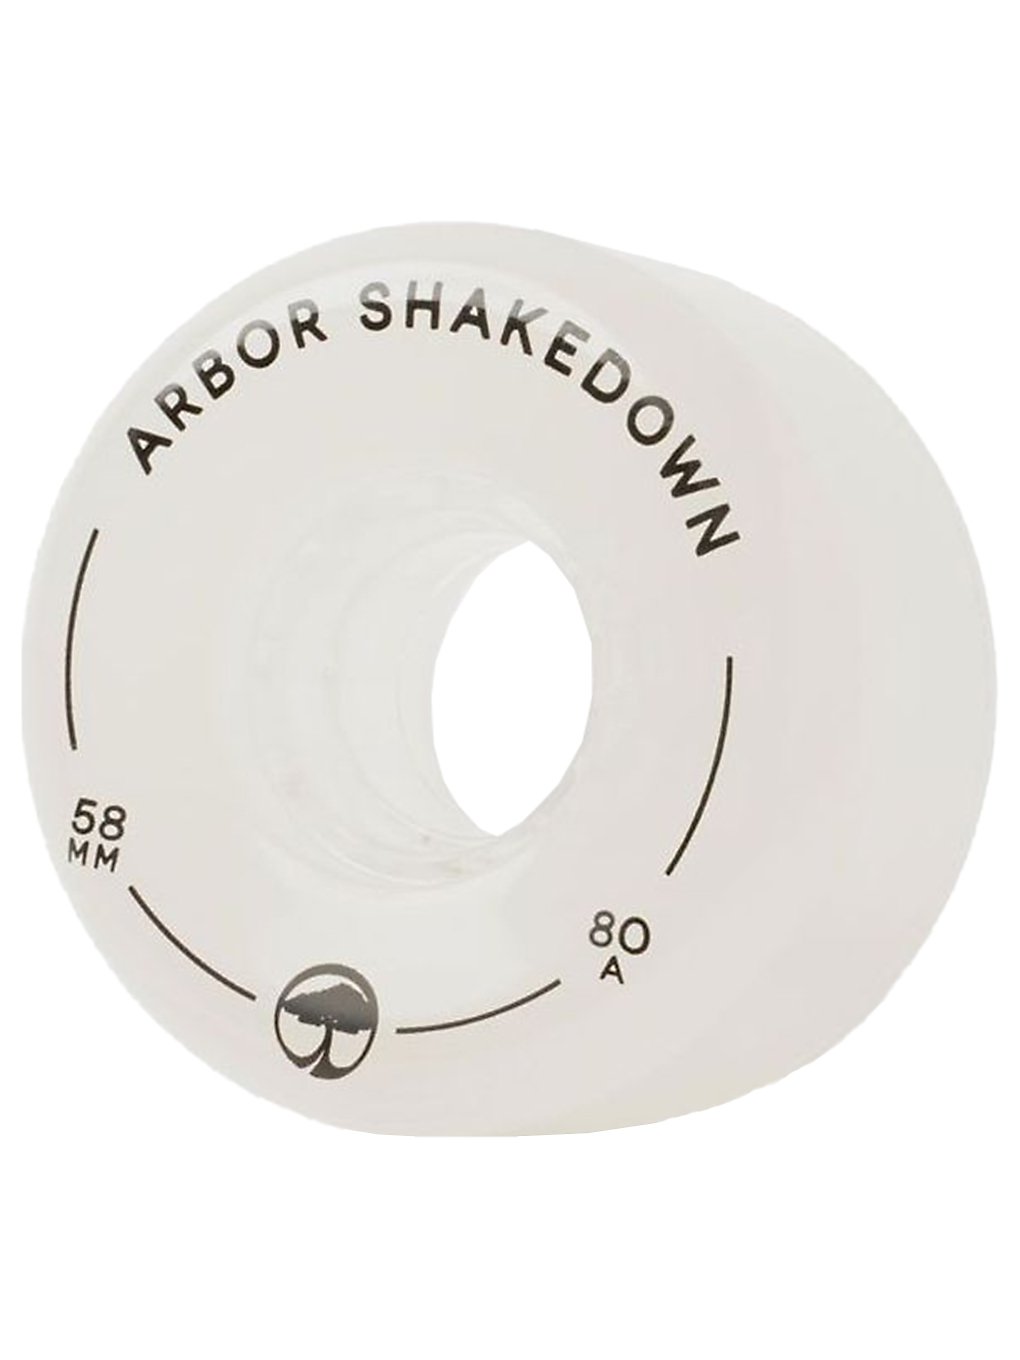 Arbor Shakedown 80a 58mm Rollen ghost white kaufen